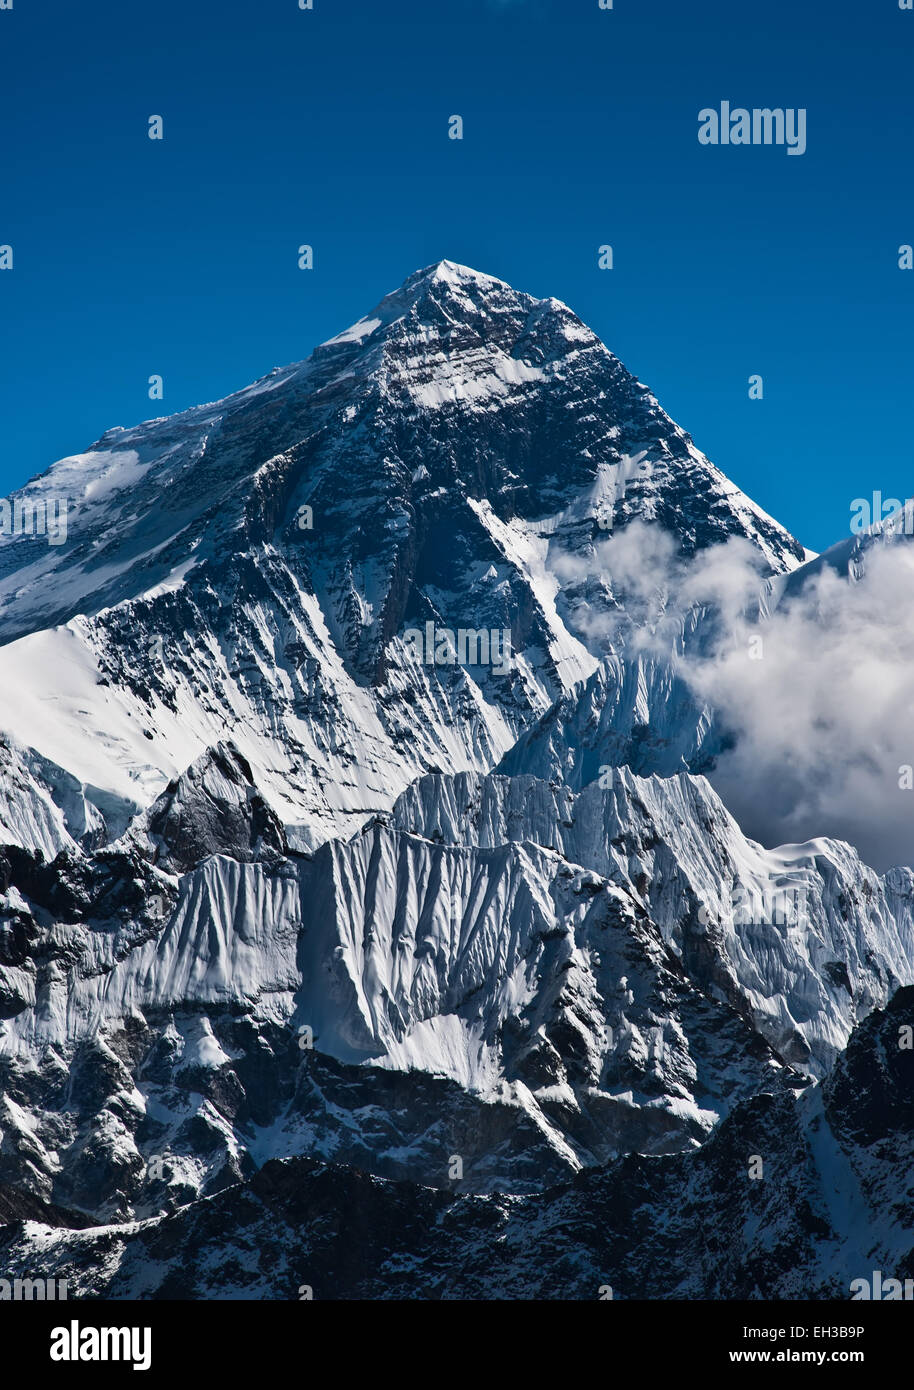 Everest Mountain Peak or Sagarmatha with 8848 m height Stock Photo - Alamy